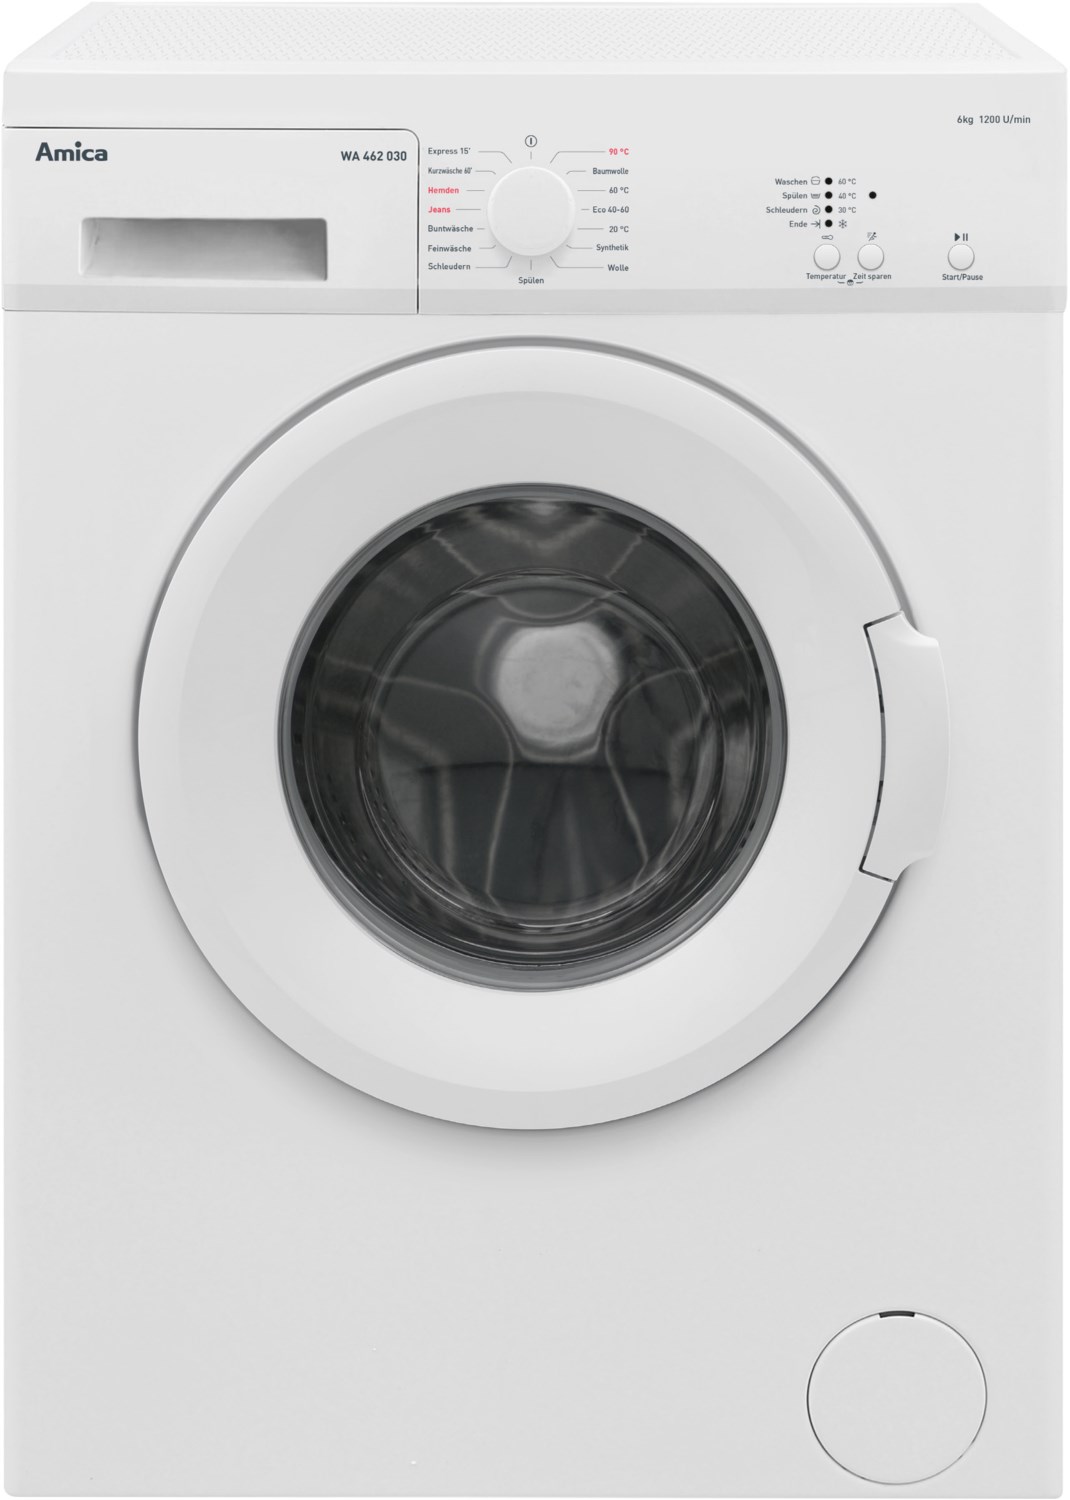 Image of WA 462 030 Stand-Waschmaschine-Frontlader weiß / D